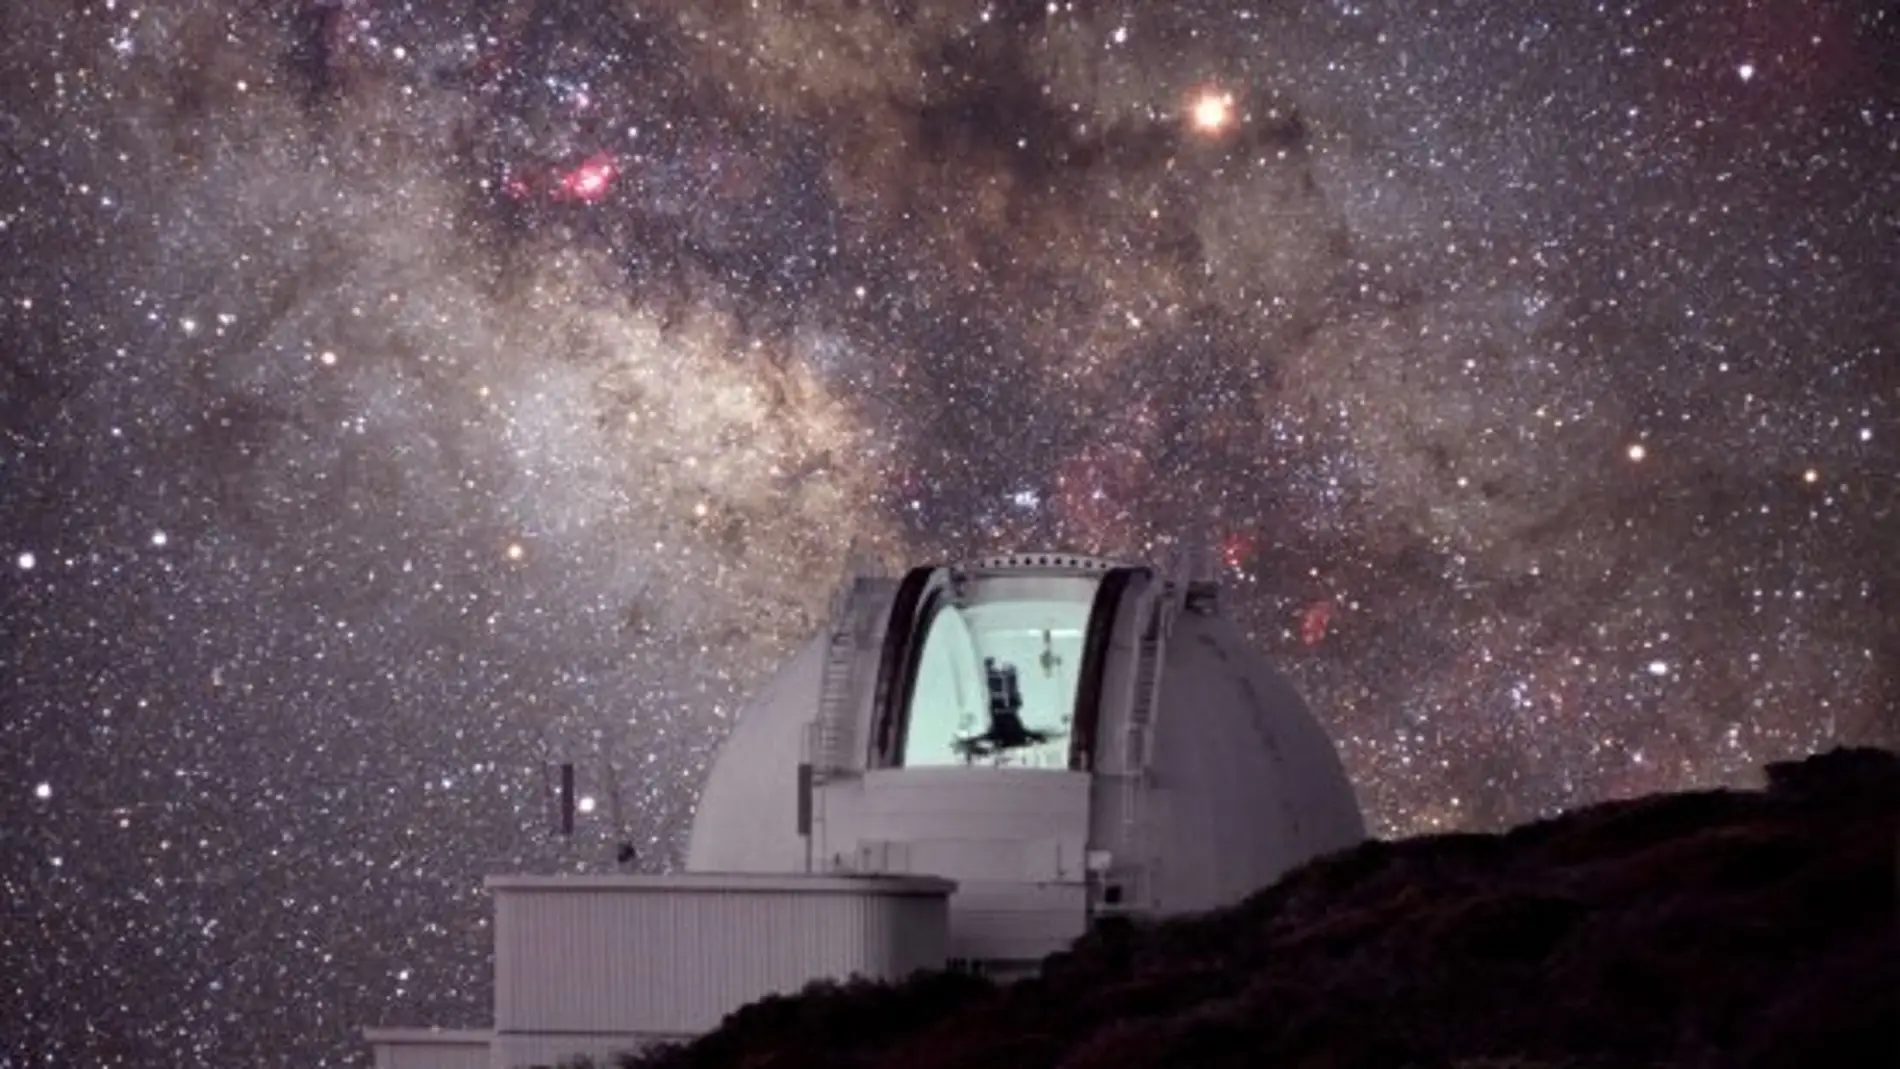 Telescopio Isaac Newton (INT), situado en el Observatorio del Roque de los Muchachos (La Palma)